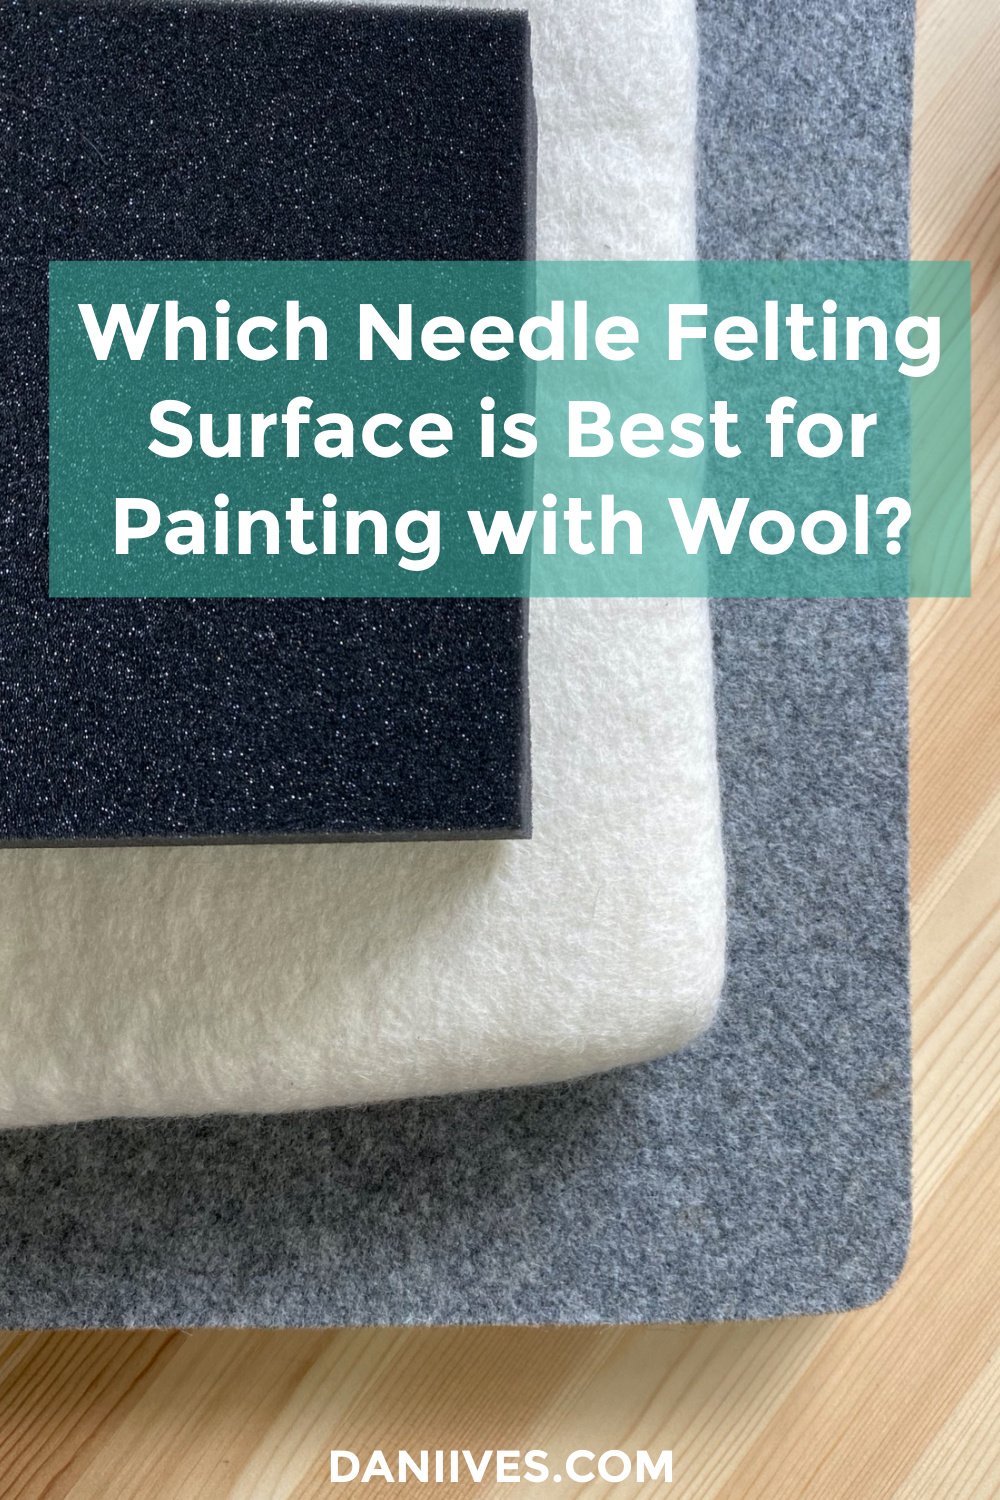 Let's talk needle felting mats.